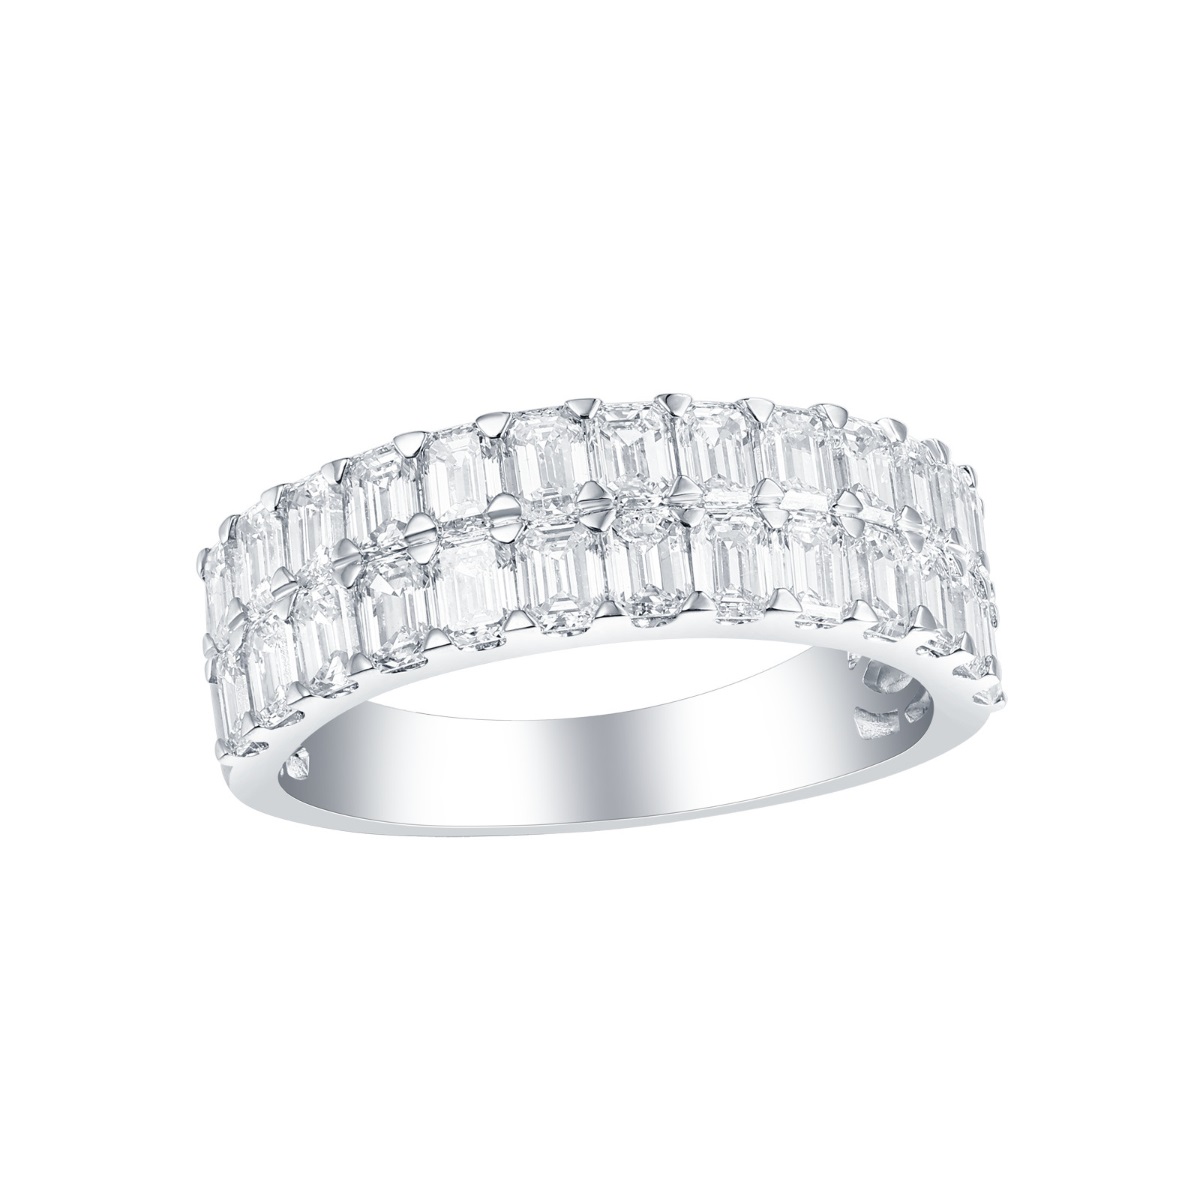 R35230WHT – 18K White Gold Diamond Ring, 2.34 TCW